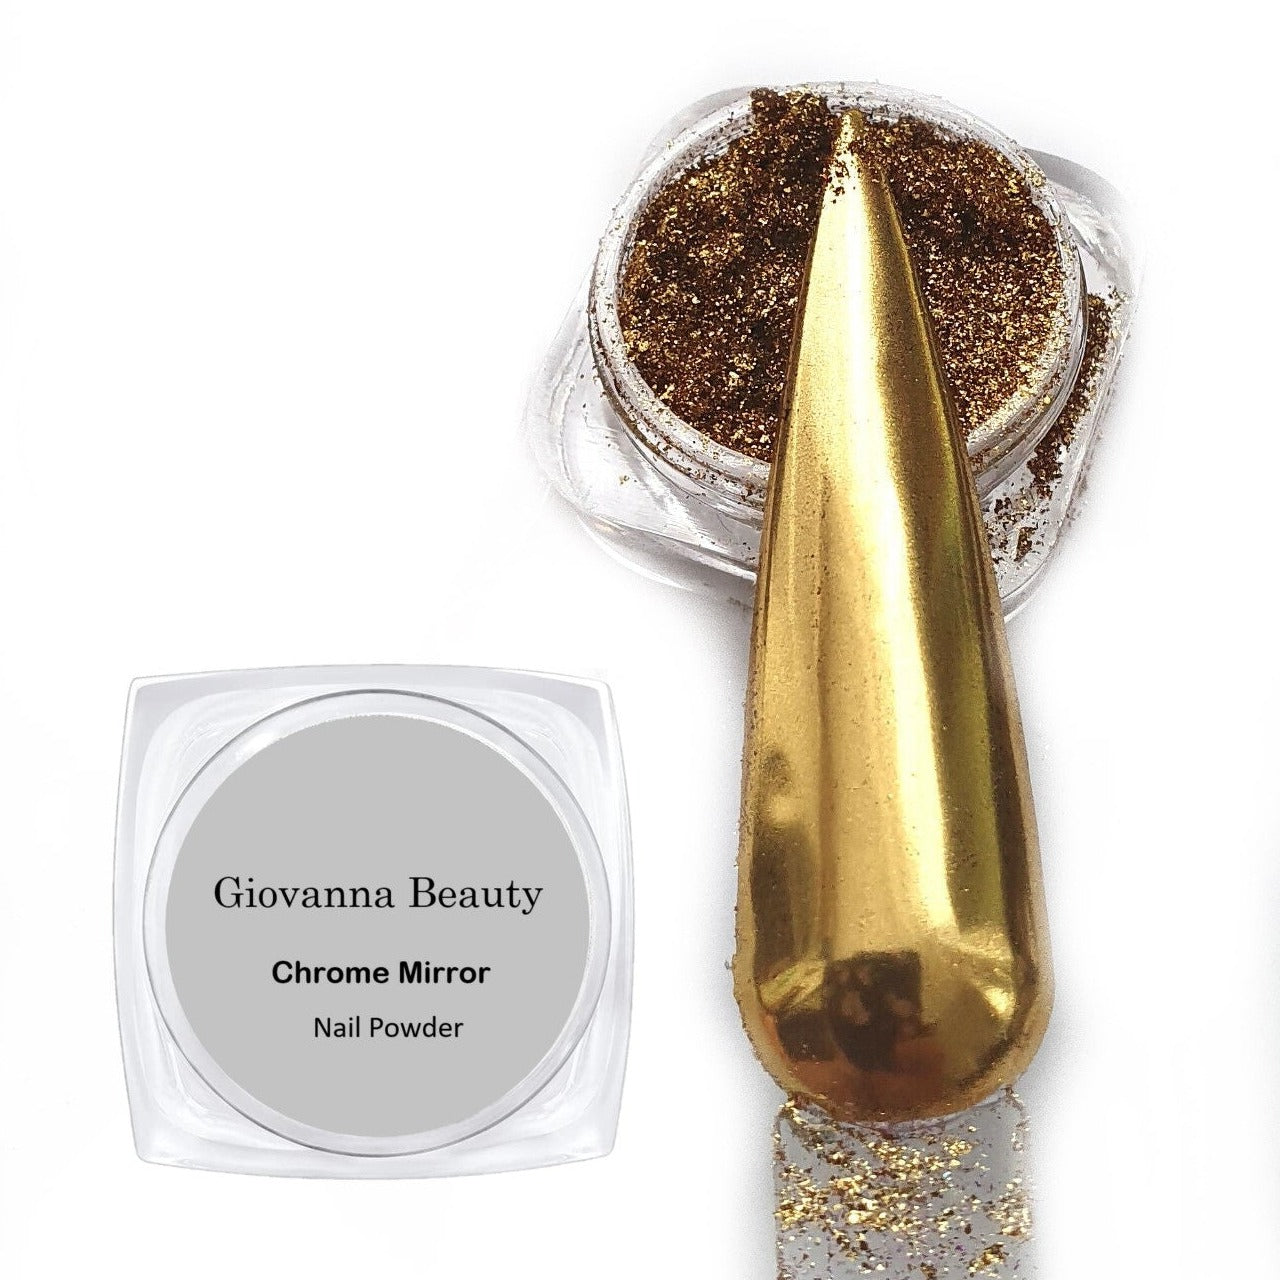 GOLD CHROME NAIL POWDER – Giovanna Beauty